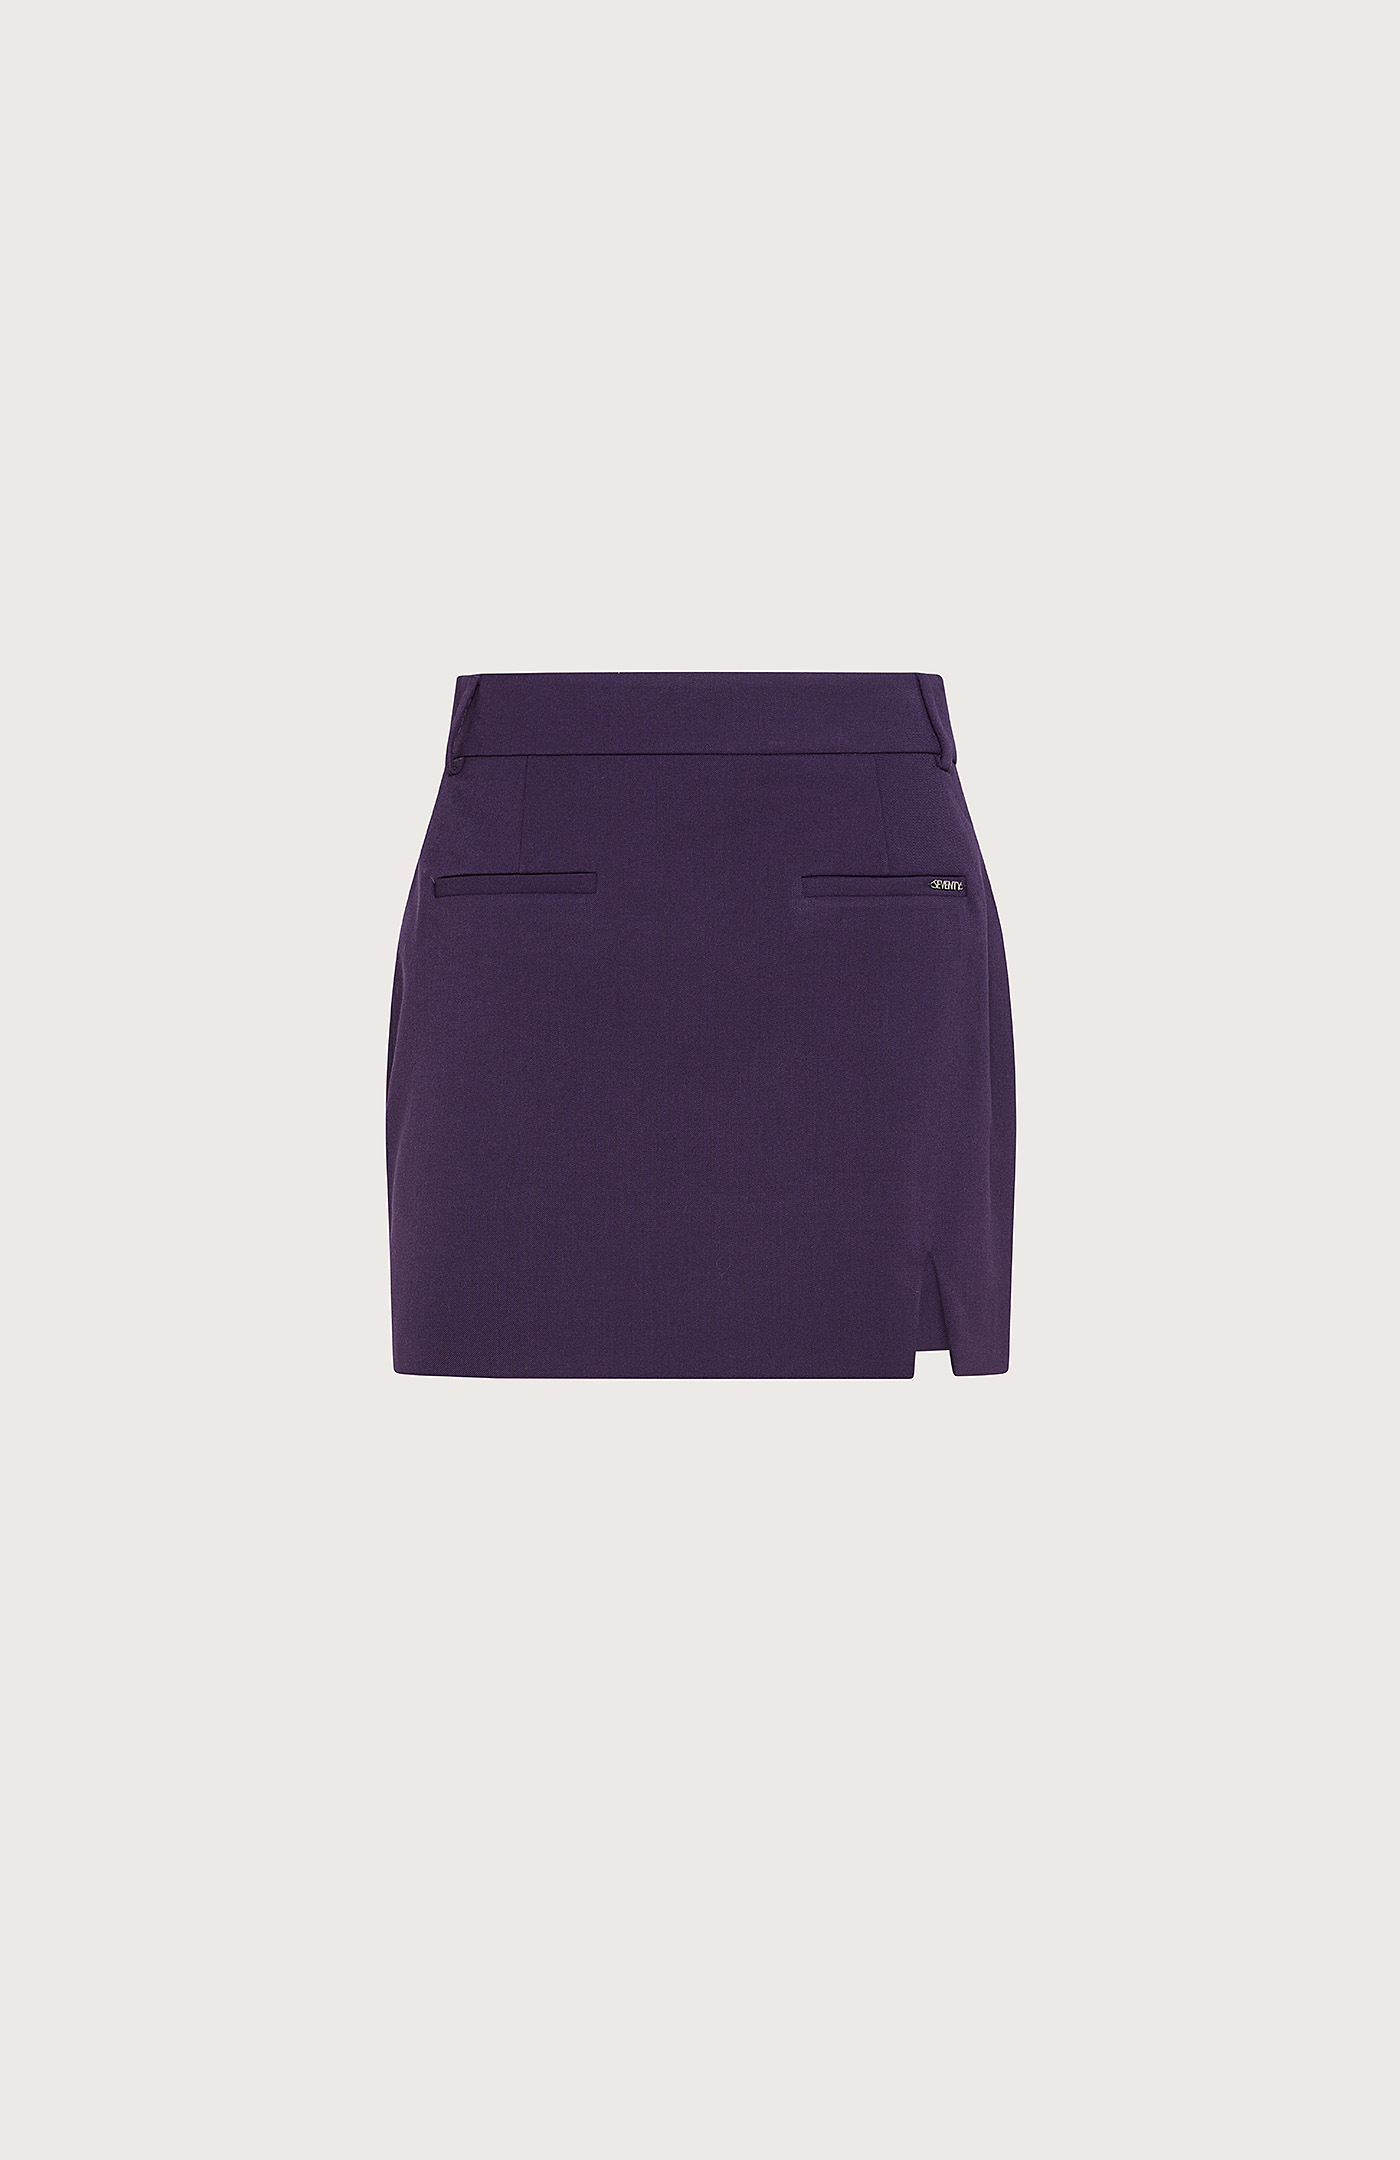 Velvet Shimmer Purple Skirt – CurveGirl